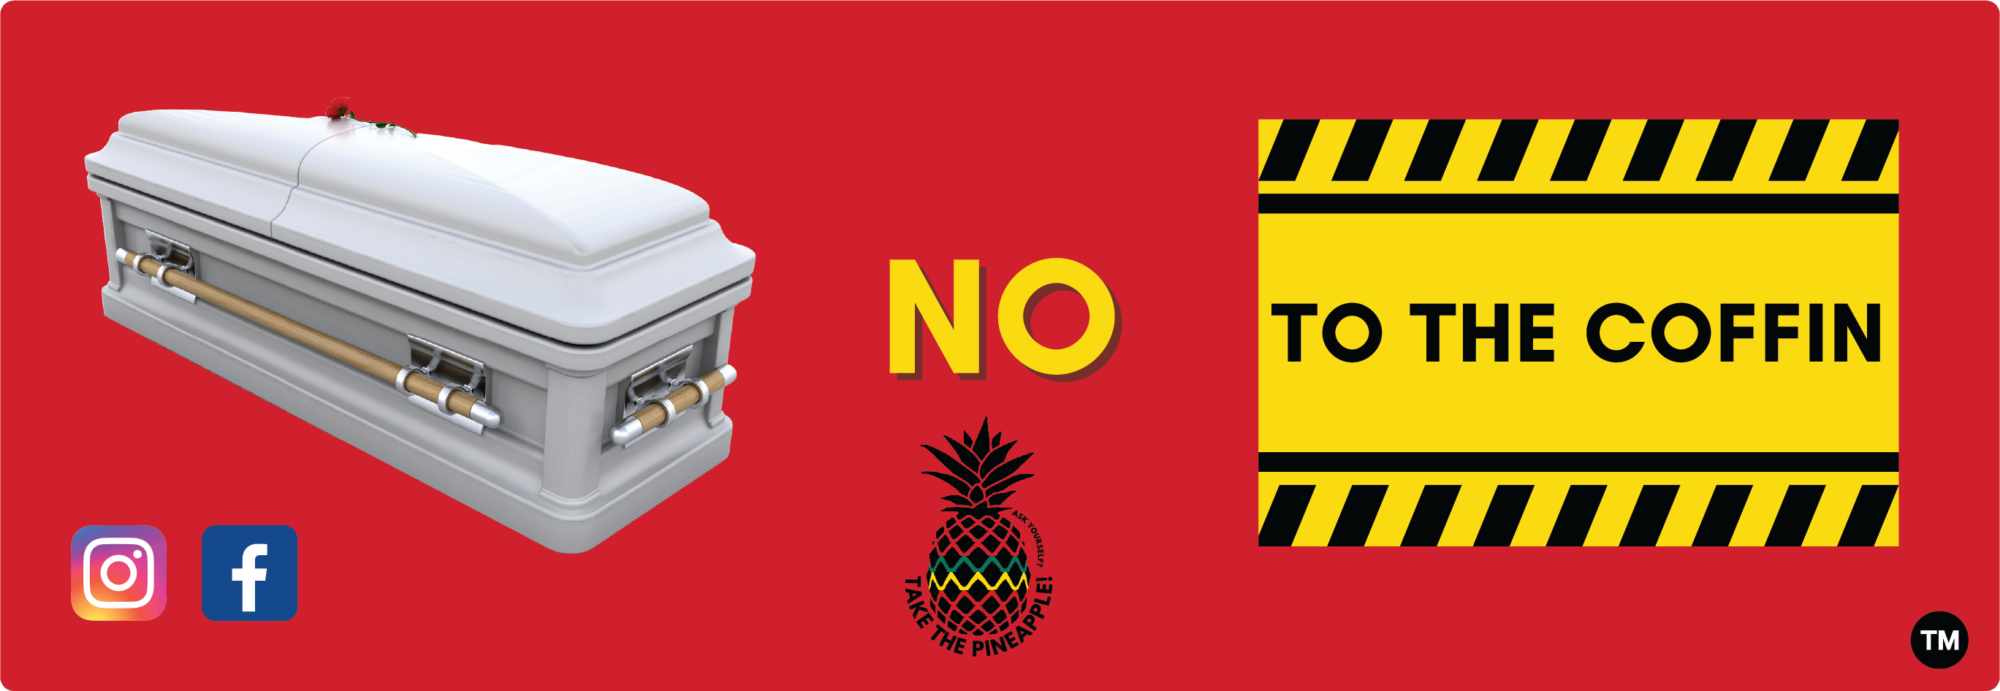 No to the Coffin Bumper Sticker